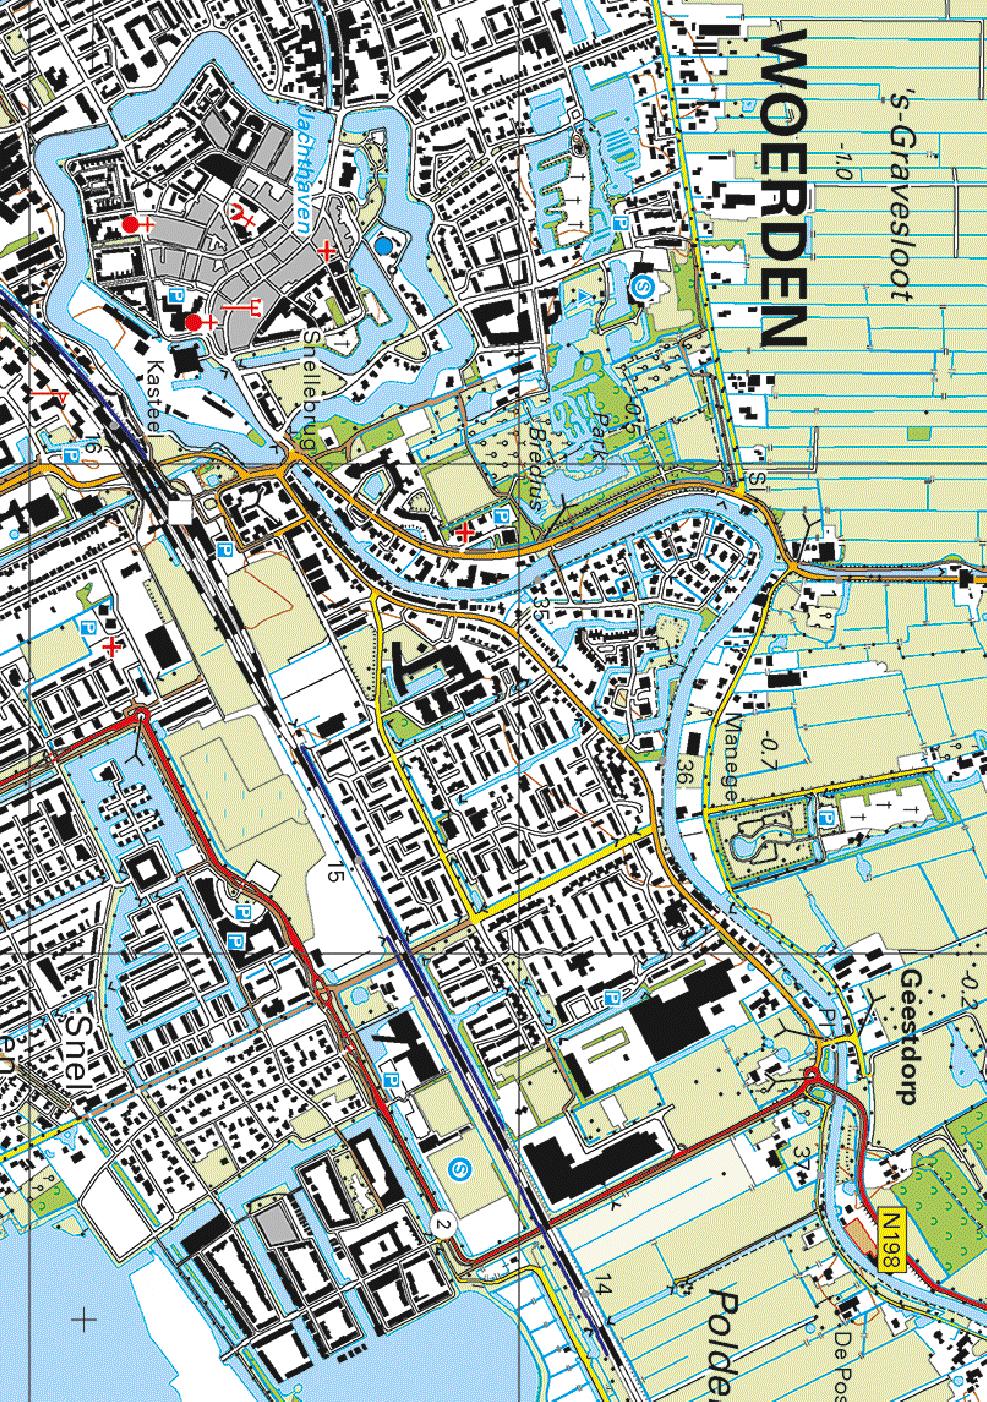 nr.46 nr.45 13 12 Overzichtskaart 18 Oude Rijn A 11 Oudelandseweg 14 B 15 C 111 N 16 17 nr.